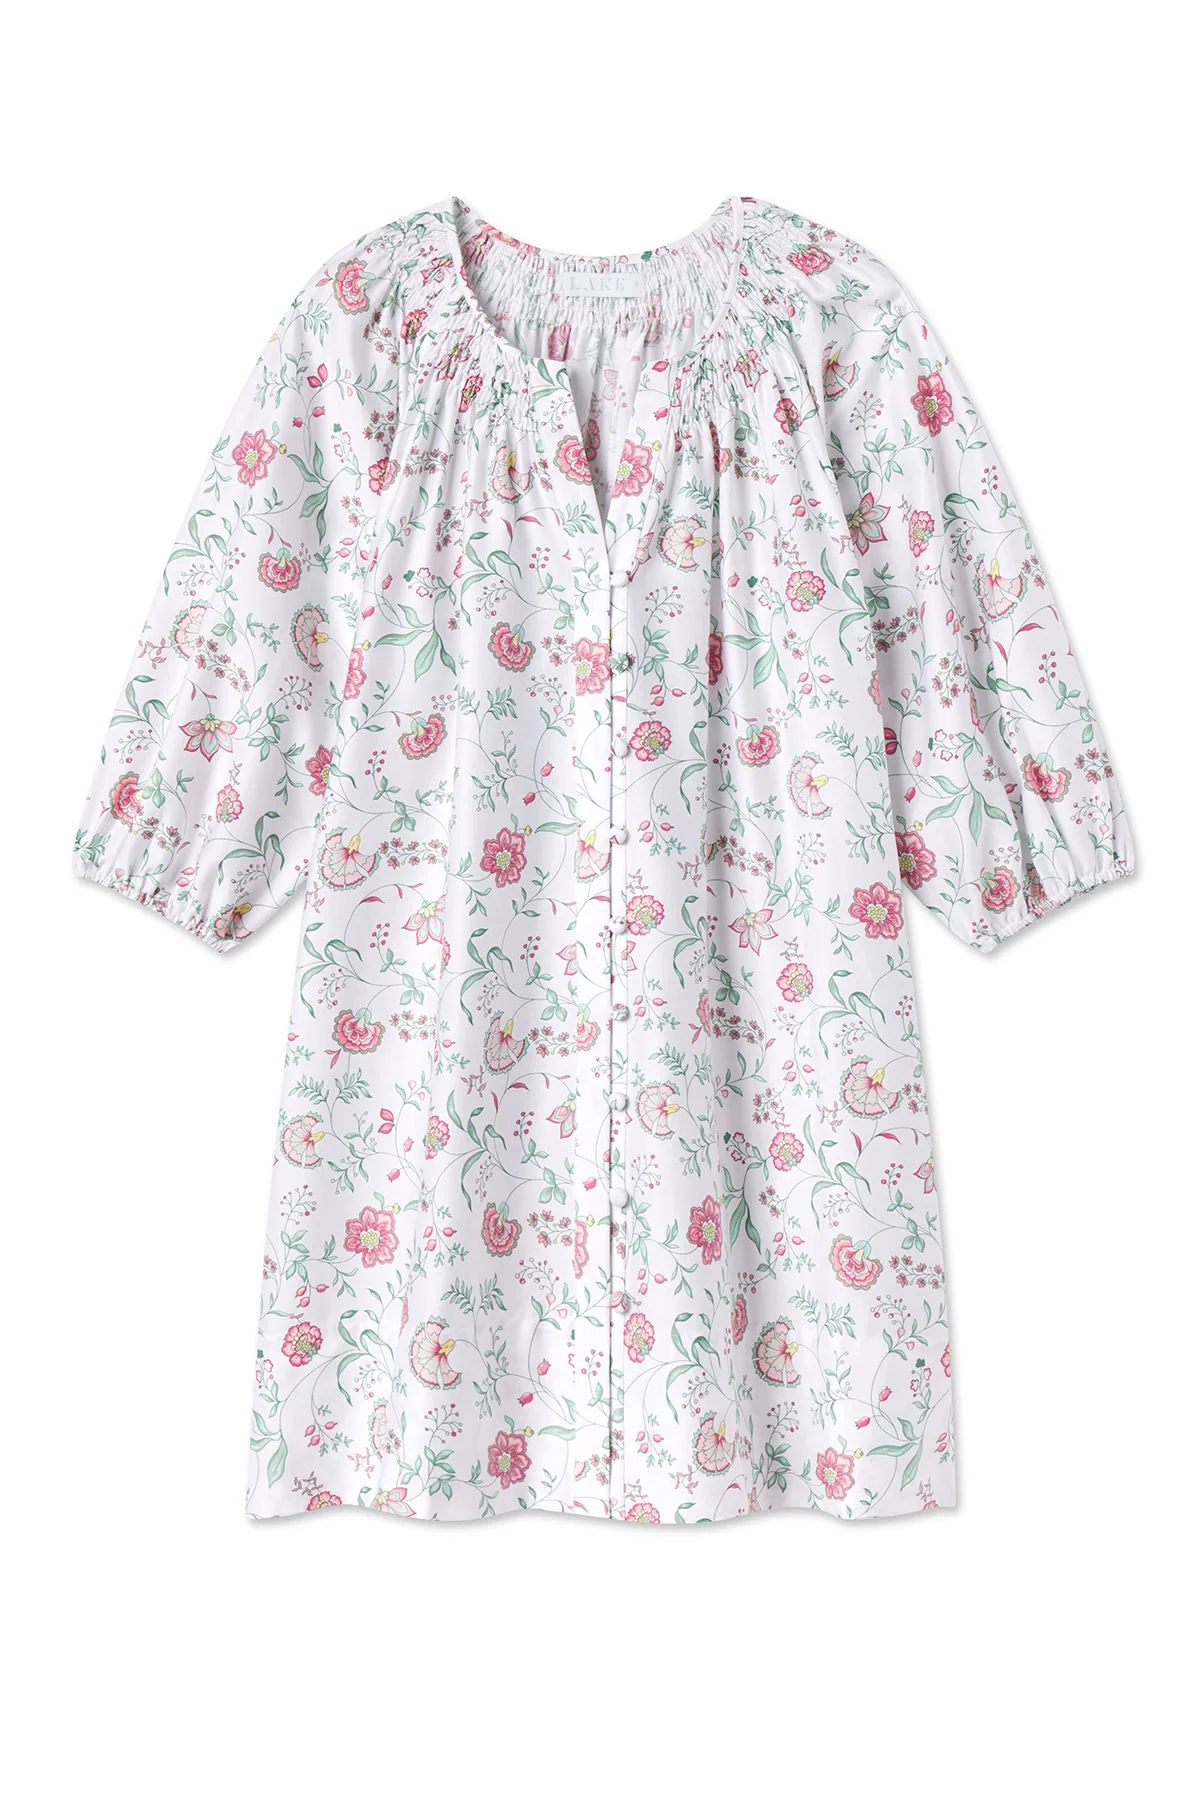 Hammock Shirt Dress in Garden Vines | Lake Pajamas